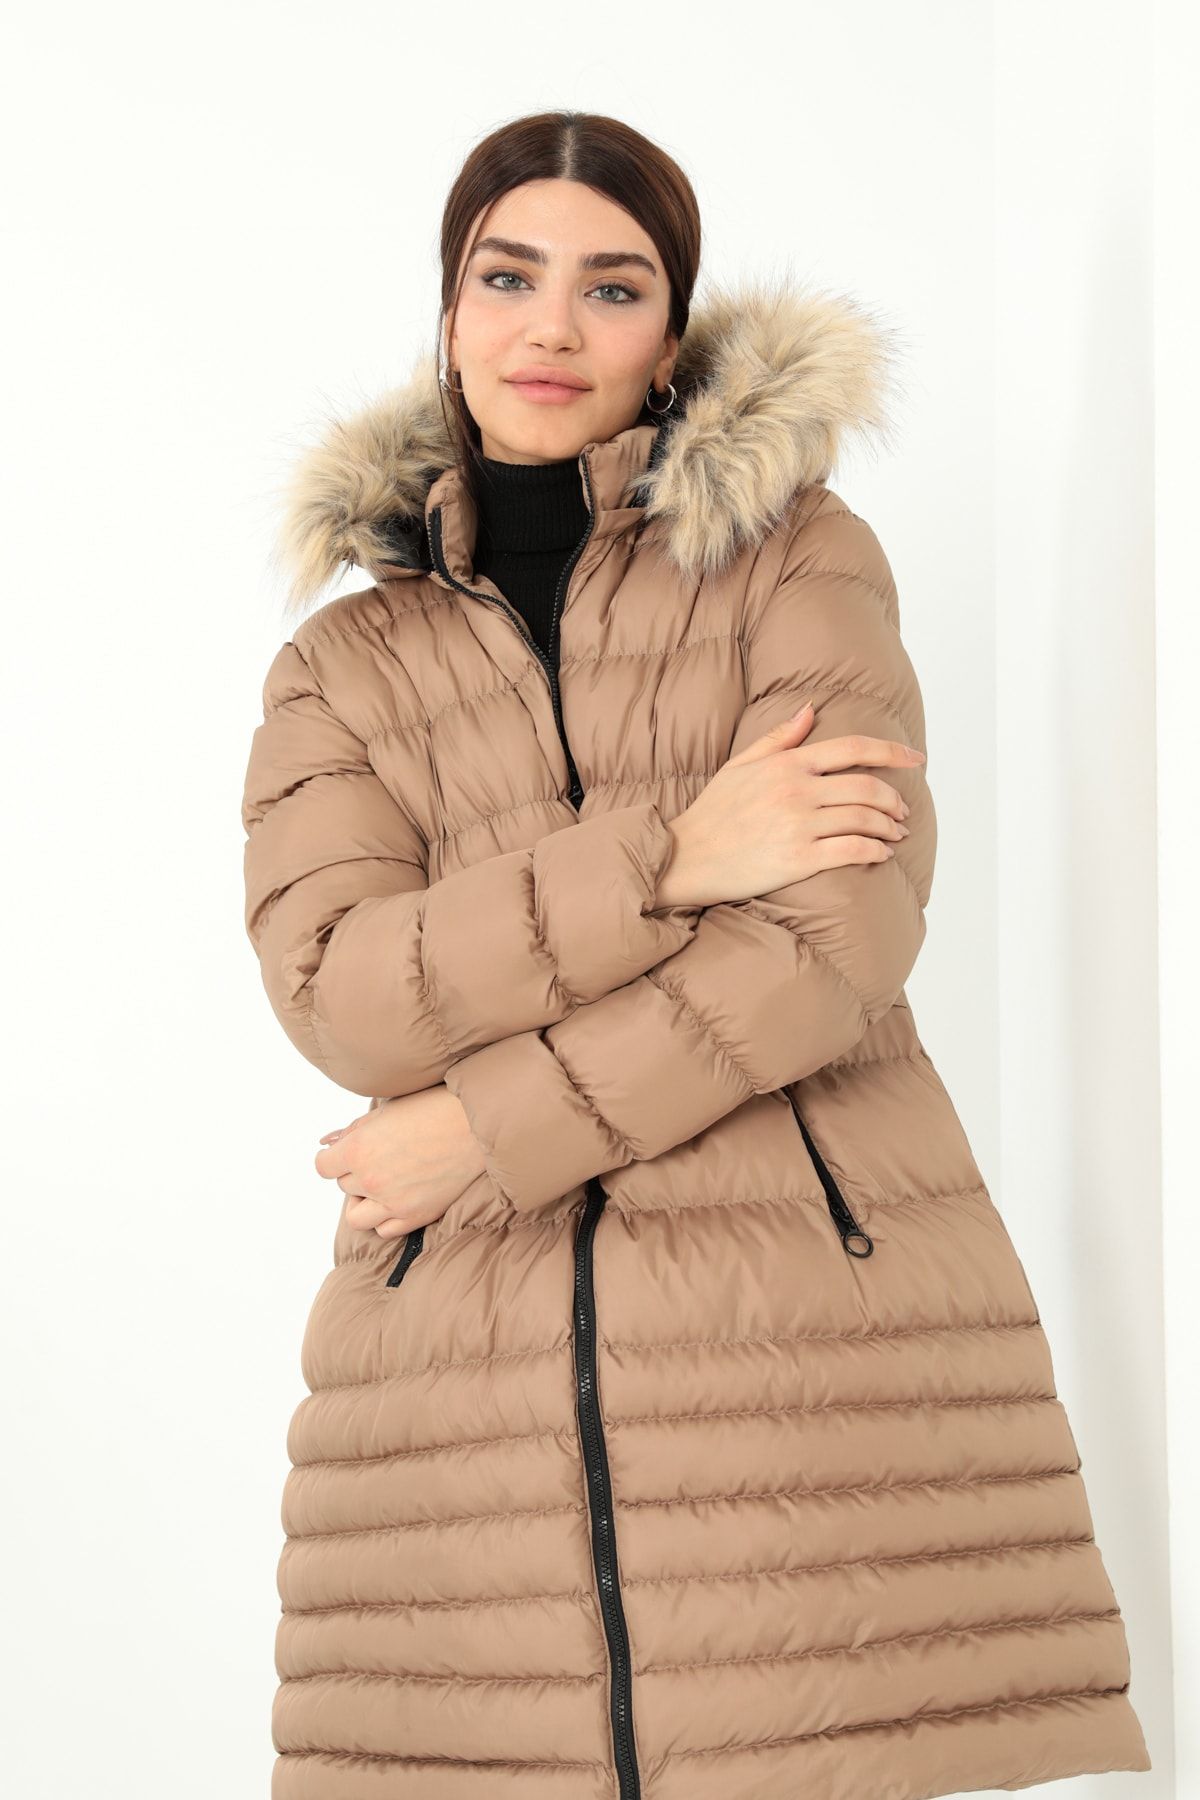 ModaPlaza Women's Puffer Coat 5010 - Trendyol